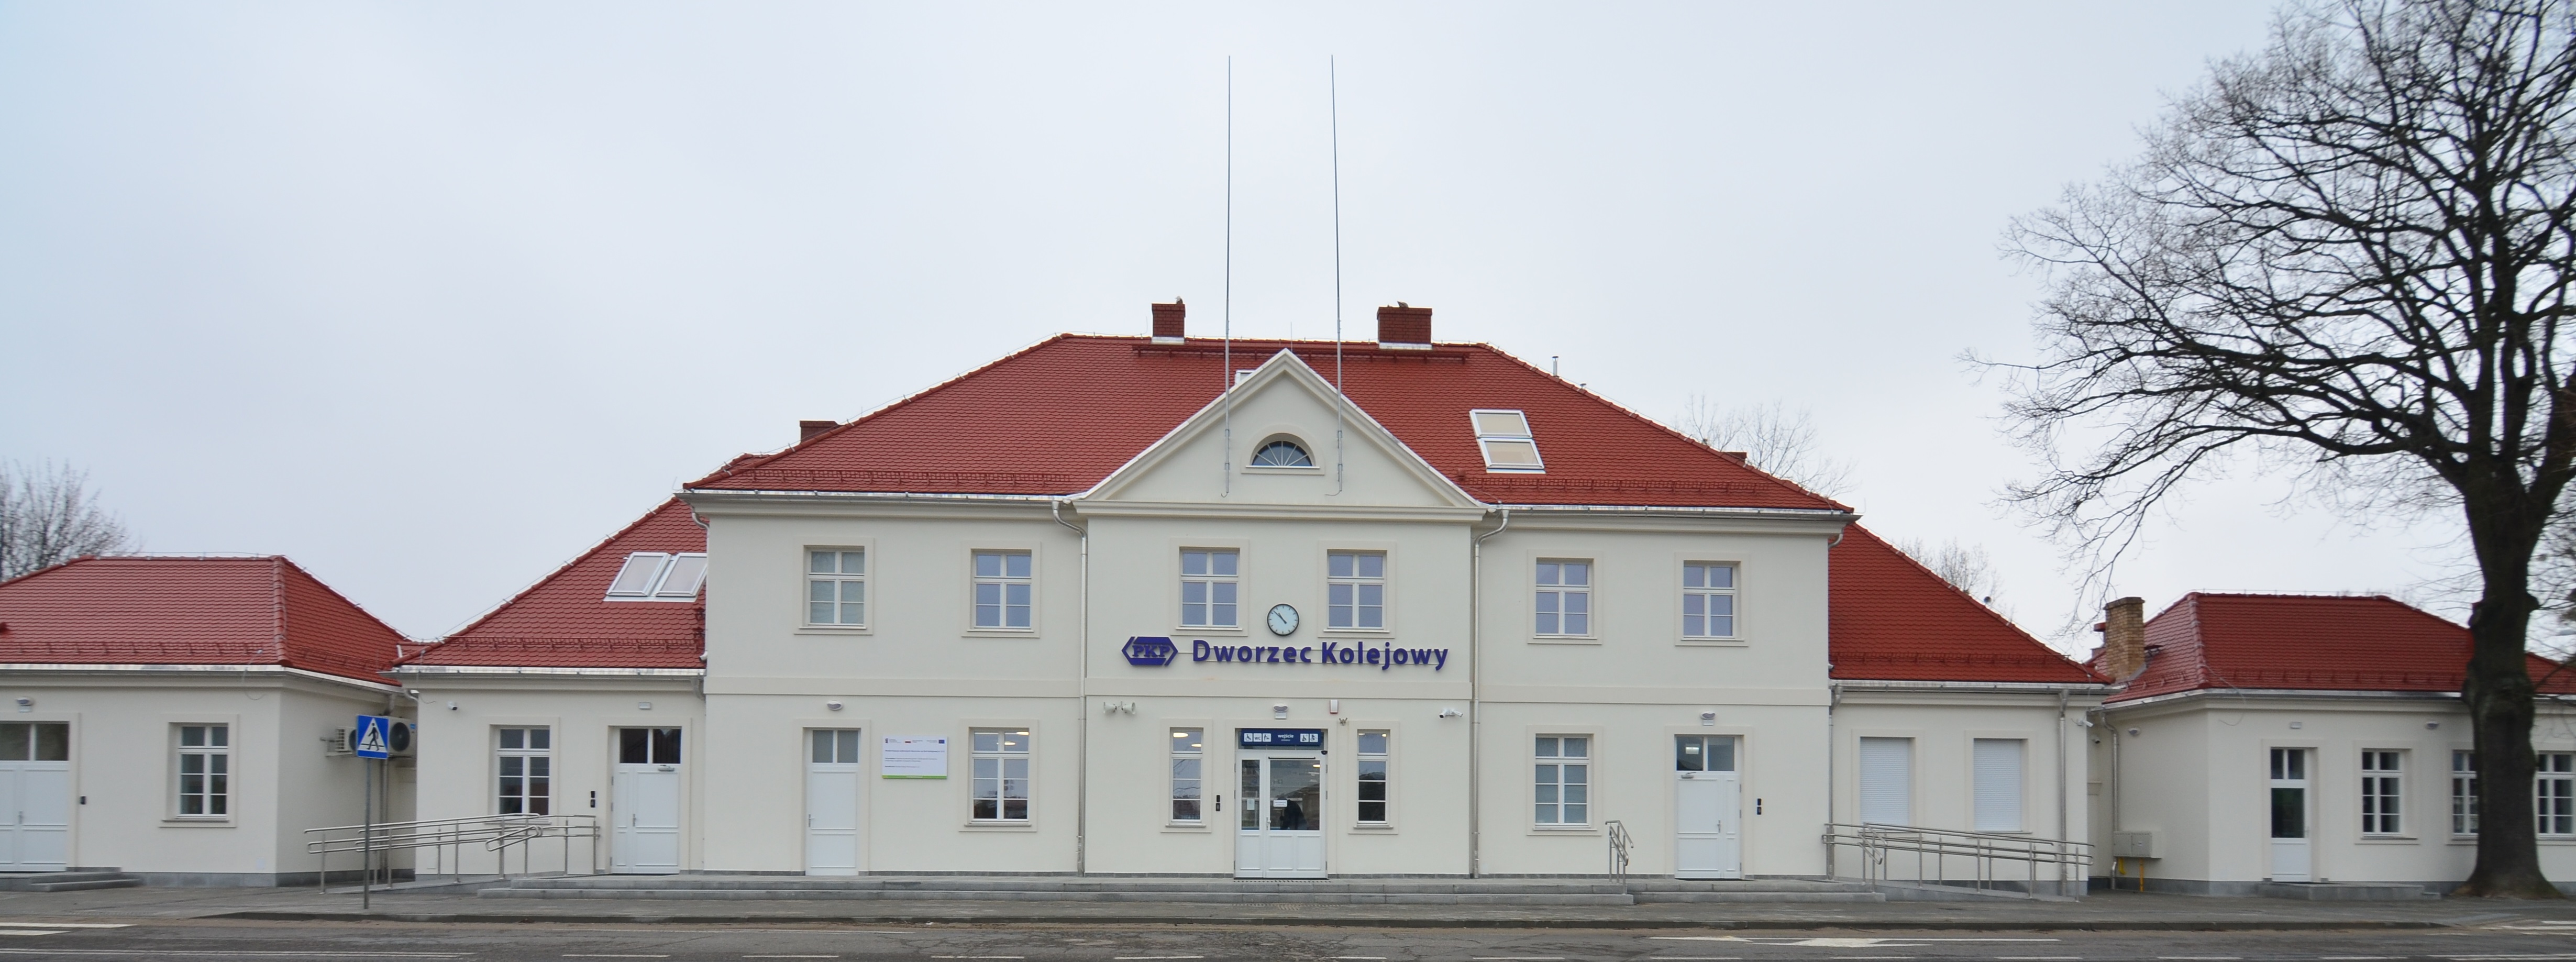 Dworzec we Władysławowie